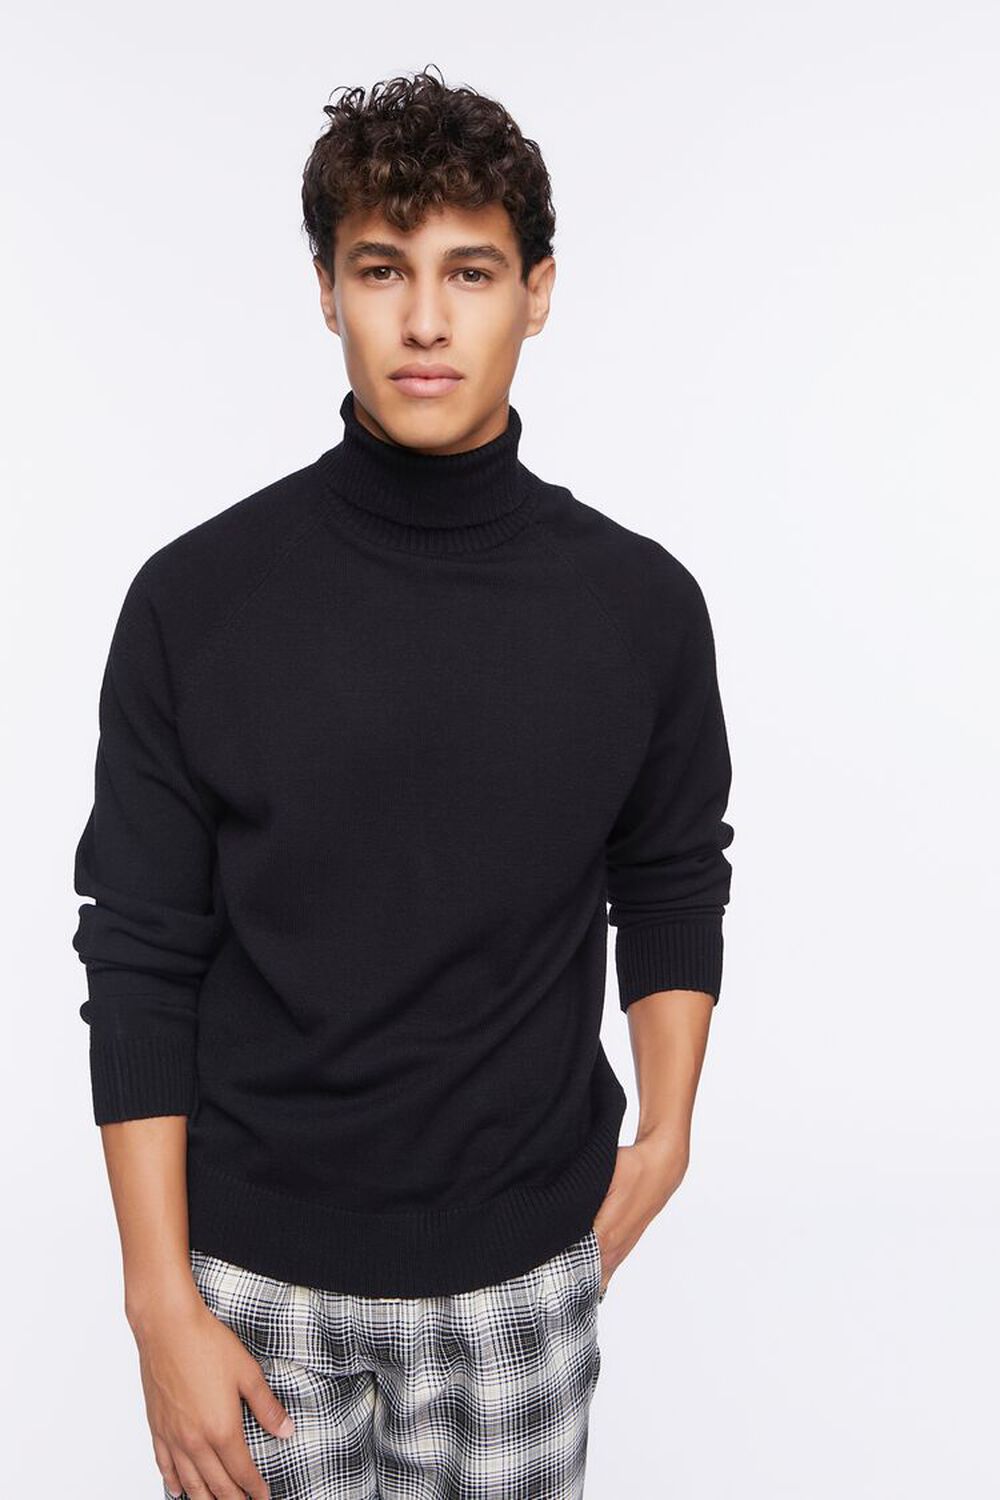 BLACK Turtleneck Raglan Sweater, image 1